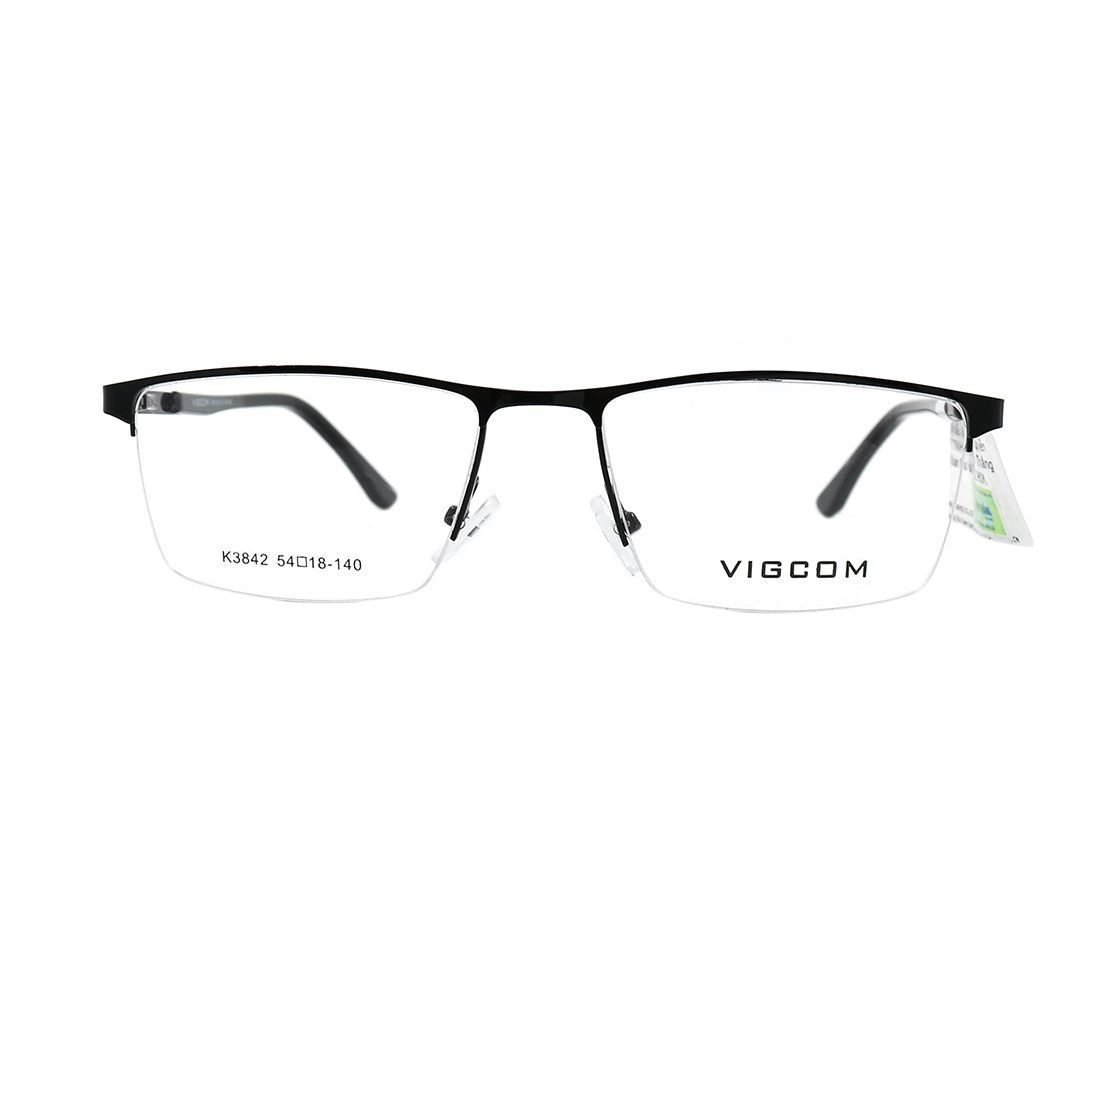  Gọng kính Vigcom VG3842 C1 